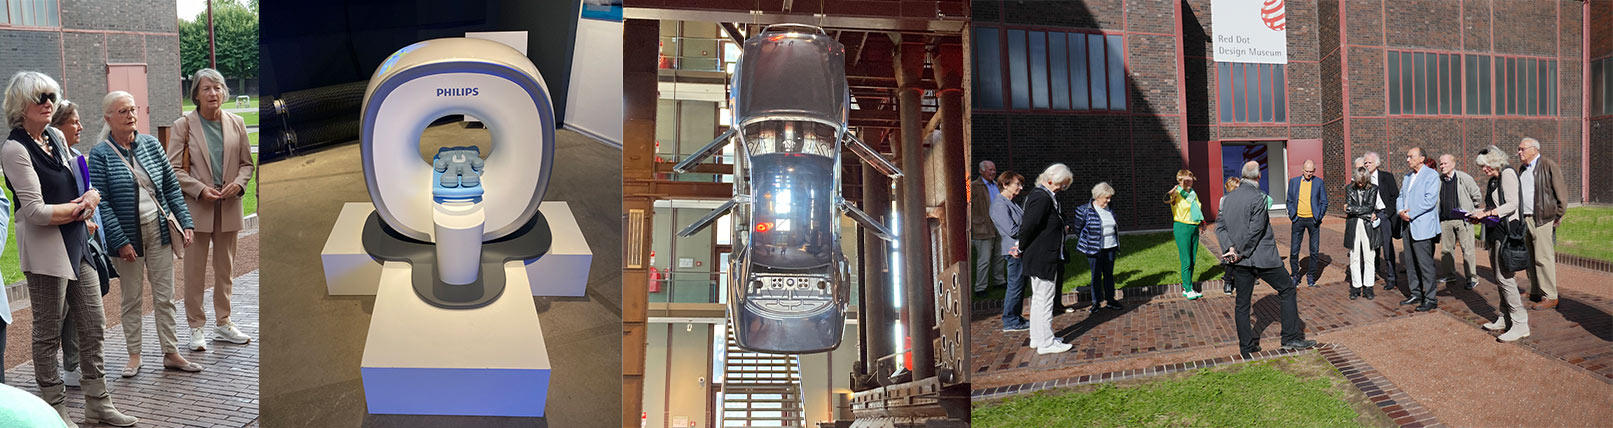 Impressionen aus dem Red Dot Museum - Die Teilnehmer der Exkursion ein Auto welches mit der Motorhaube nach oben aufgehangen wurde